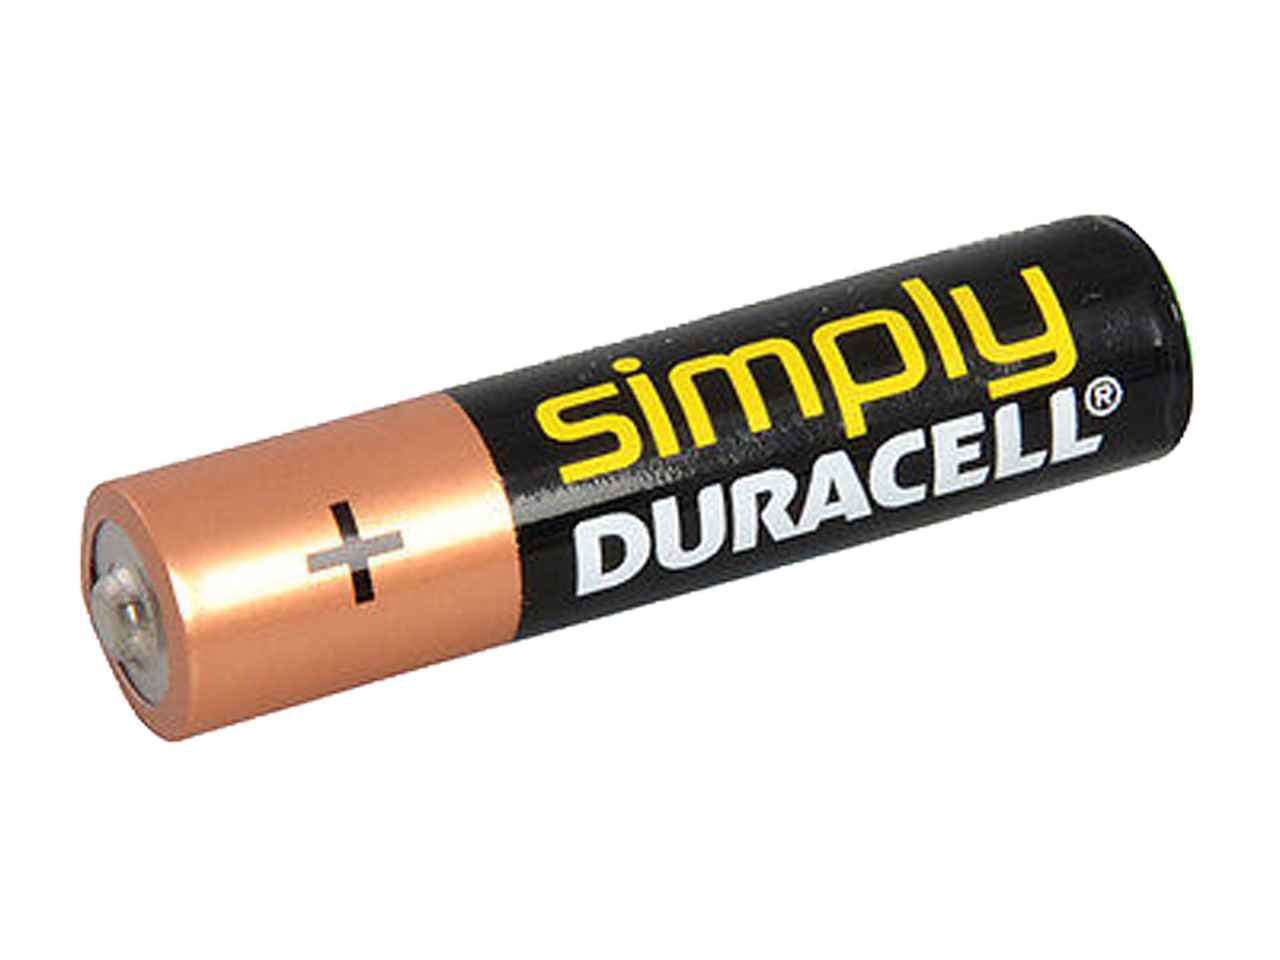 duracell-misbataaa-pack-of-4-aaa-alkaline-batteries